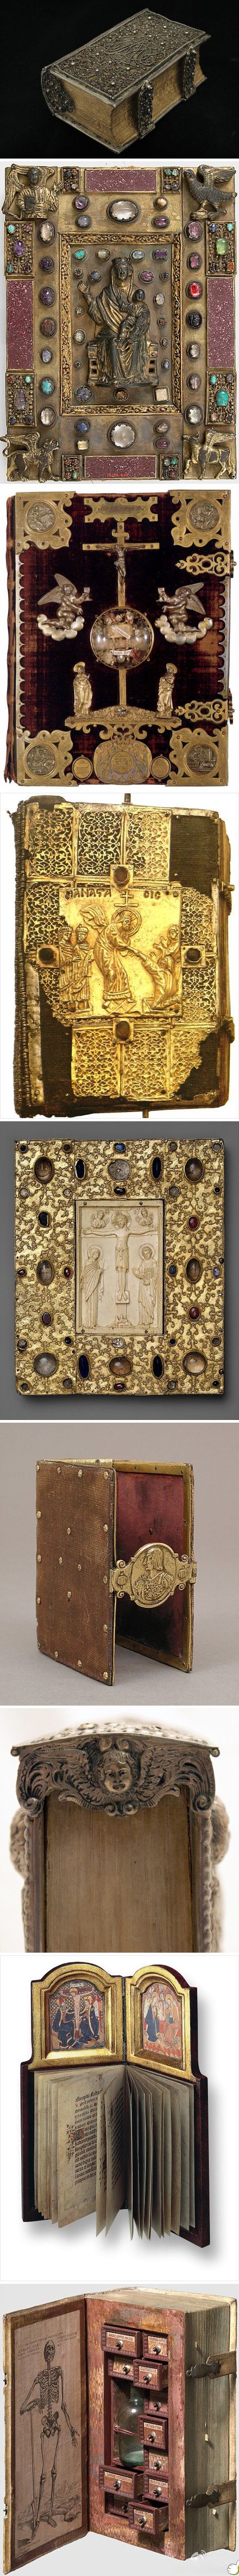 中世纪错彩镂金的书籍封面，以珍贵的宝石、精美的黄金、象牙雕刻工艺打造而成，如此华丽的封面，内容是什么也没那么重要了。